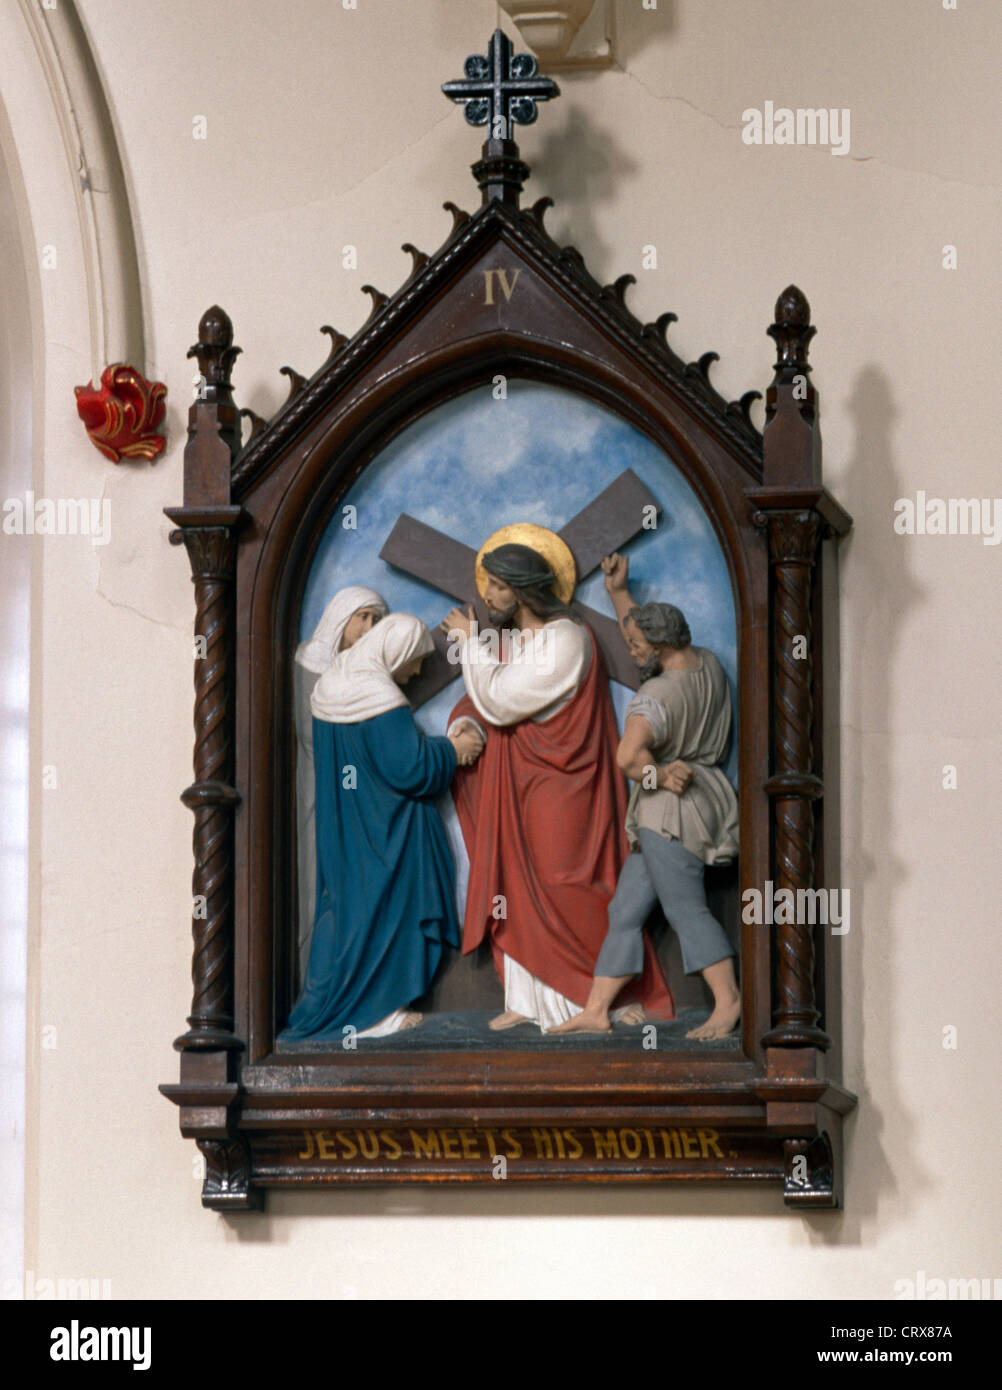 L'Irlande du Nord Belfast Falls Road St Peter's Cathedral Peinture de la gare de La Croix, Jésus rencontre sa mère tout en portant la croix Banque D'Images